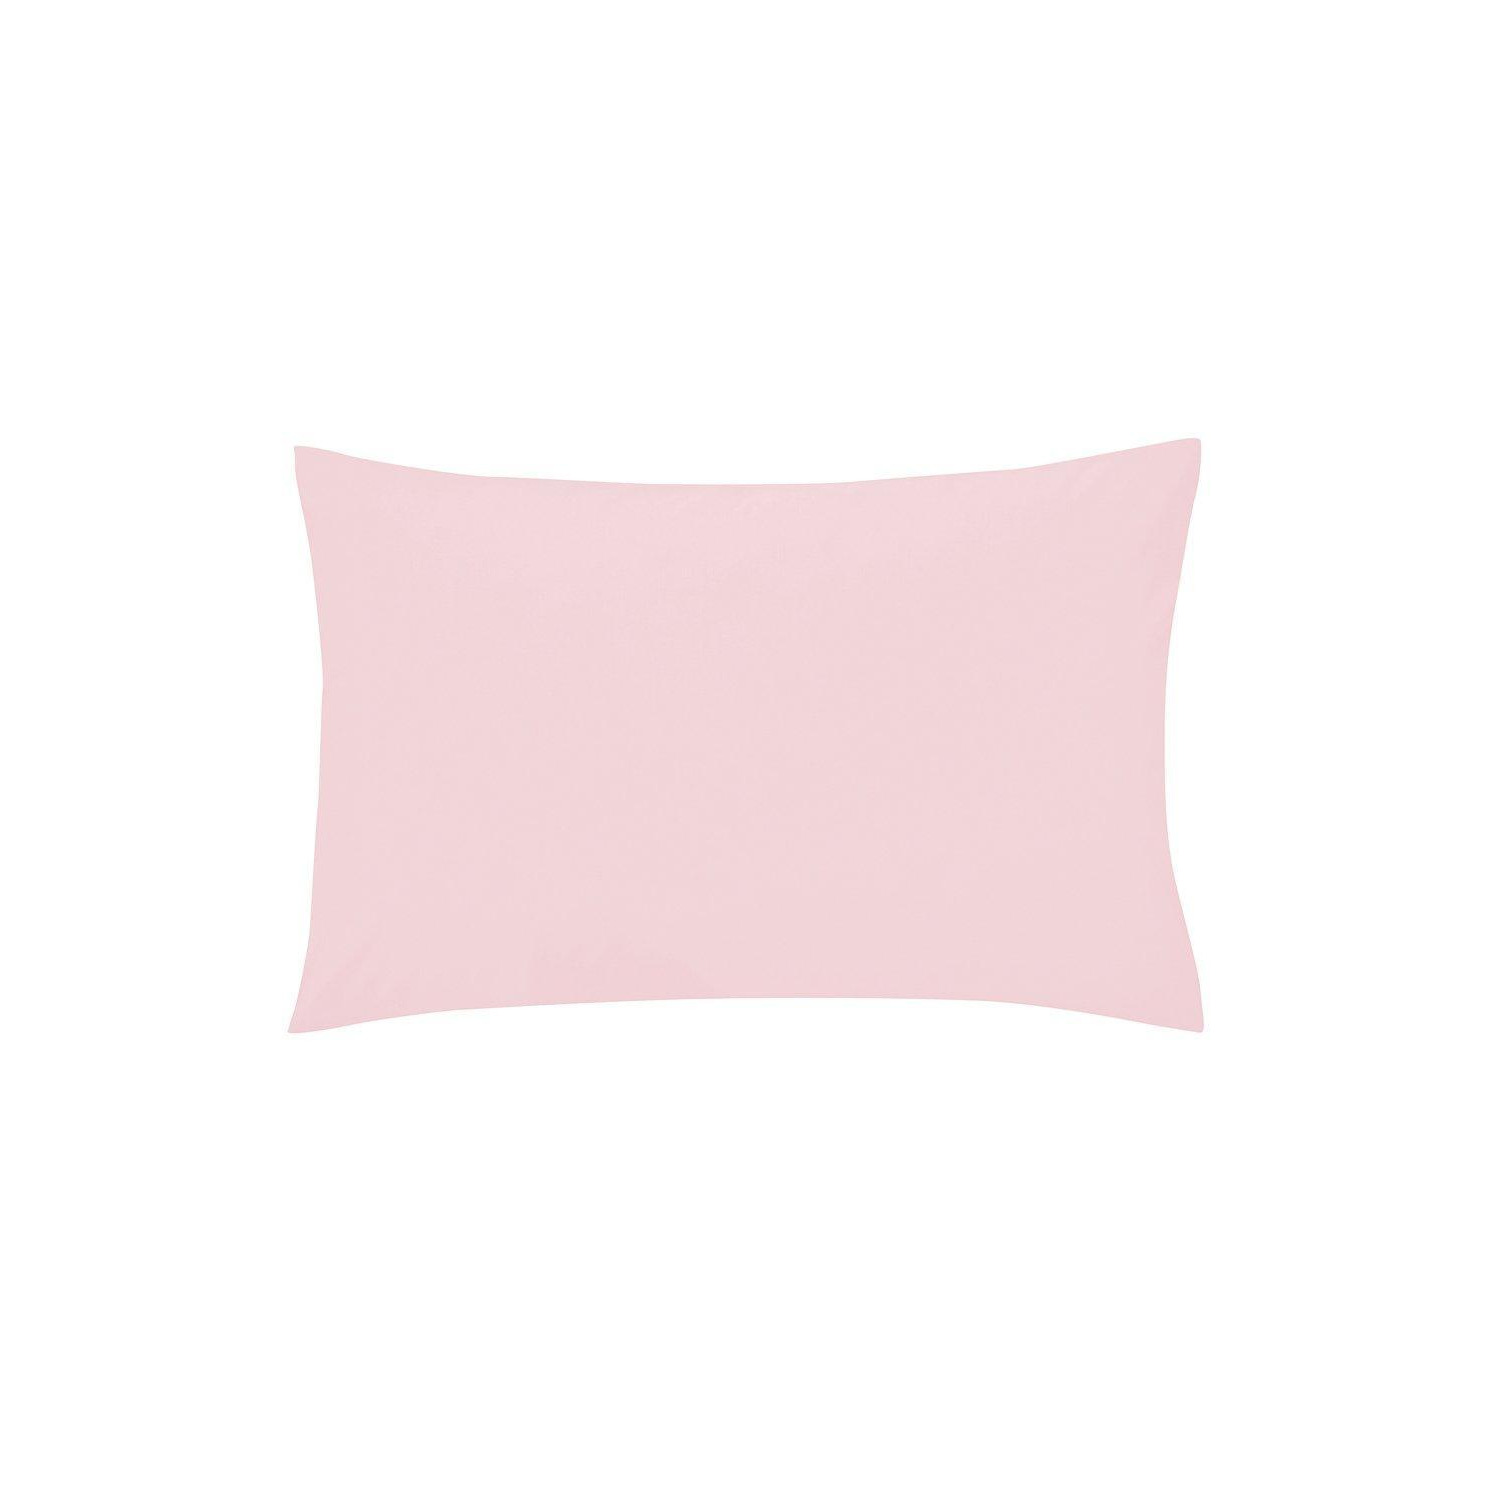 'Plain Dye' Polycotton Standard Pillowcase - image 1